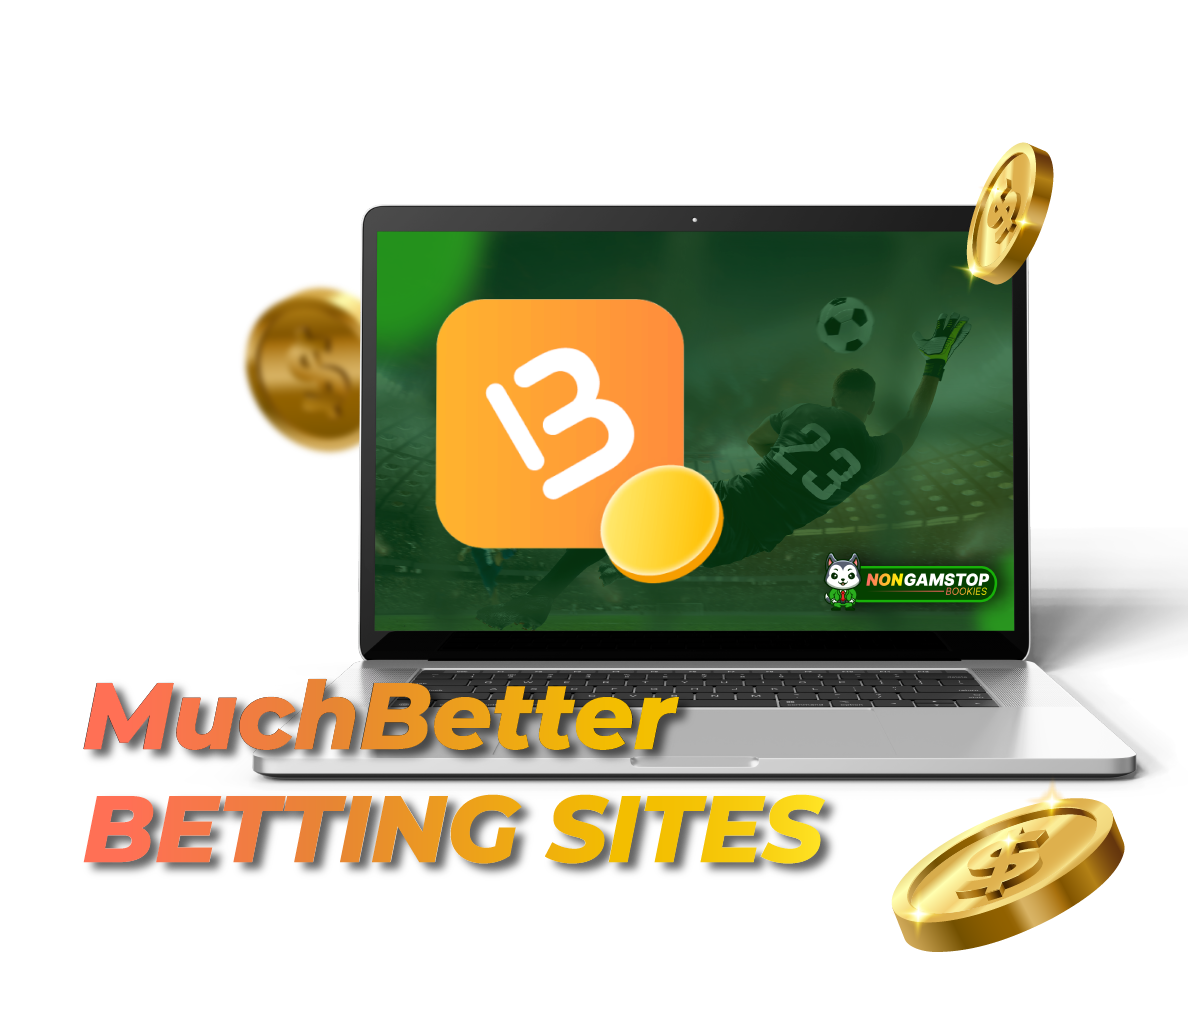 MuchBetter Betting Sites